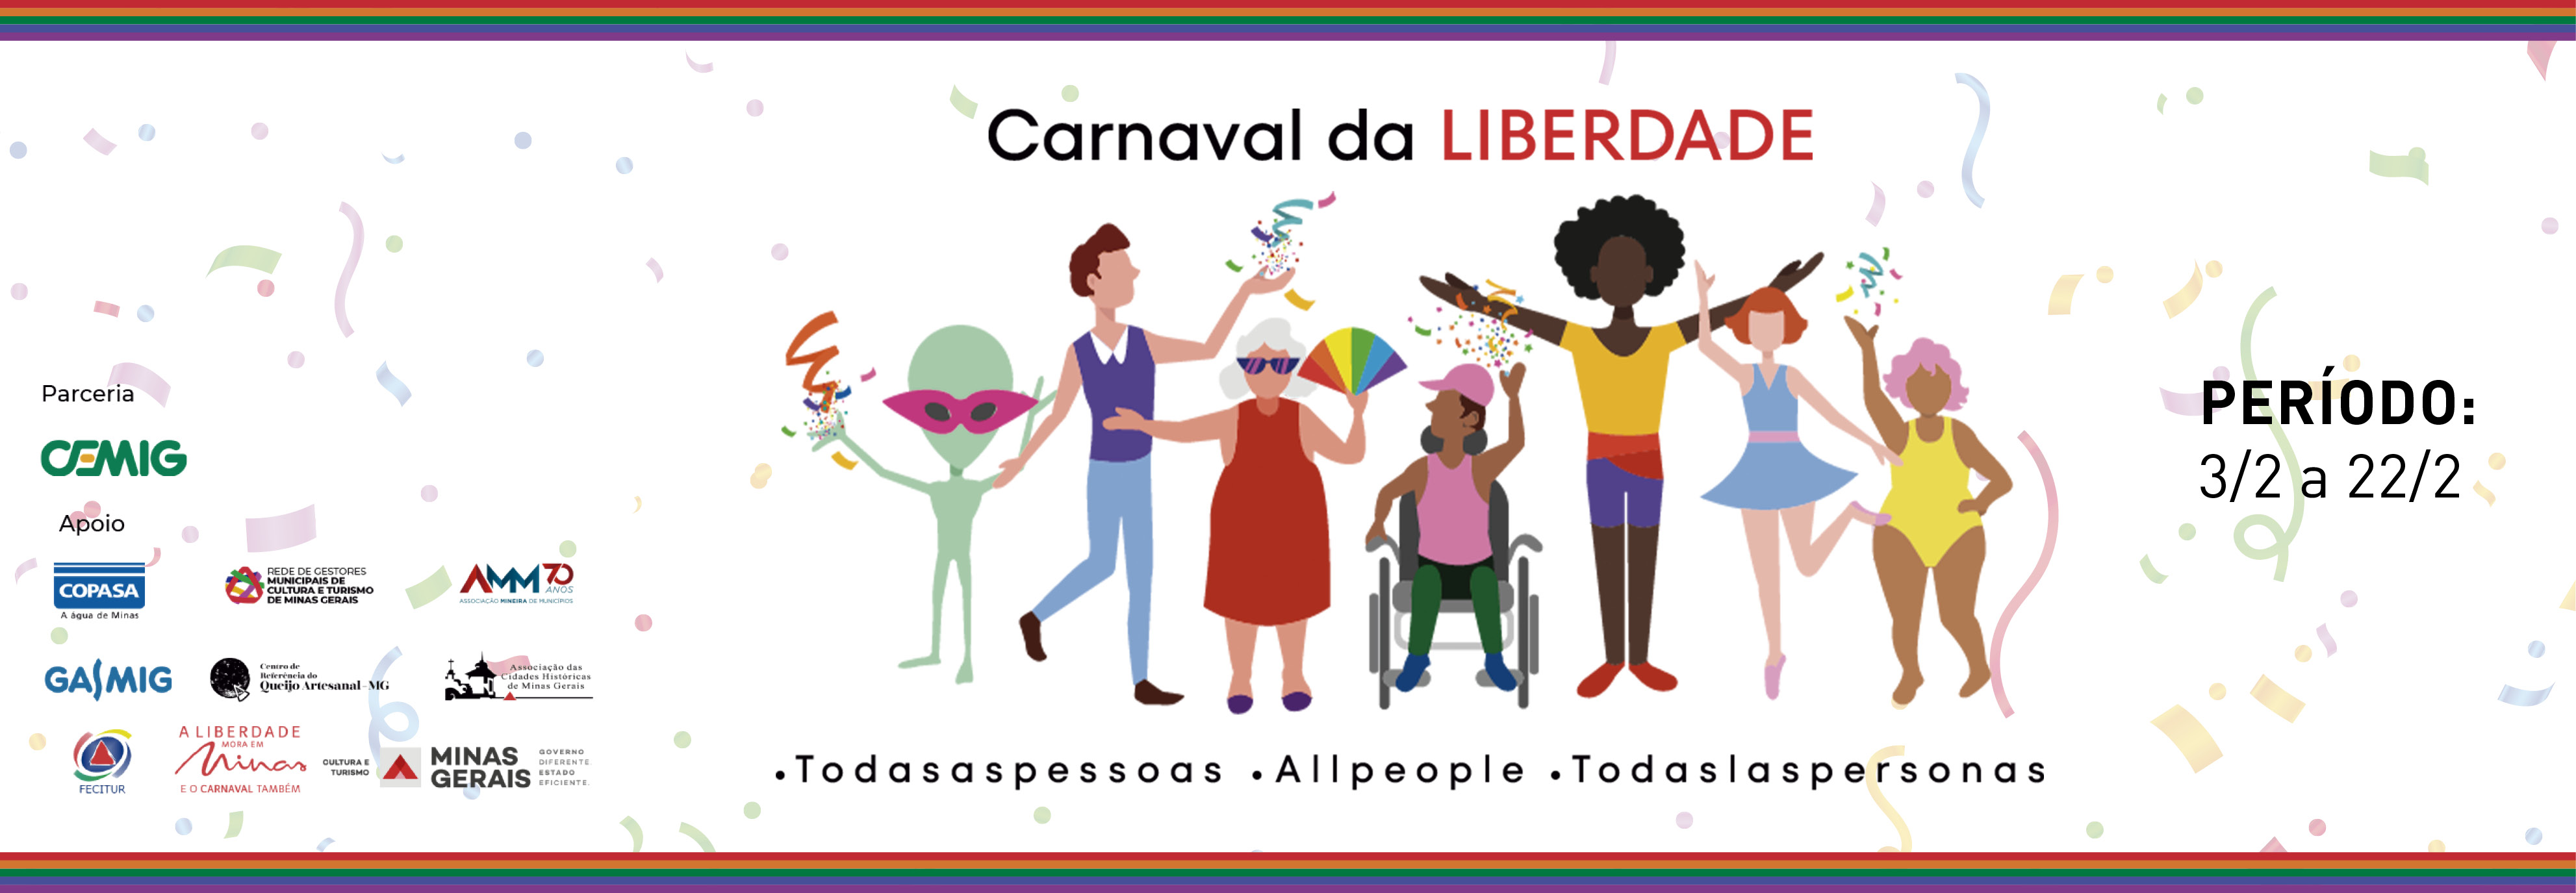 Carnaval da Liberdade